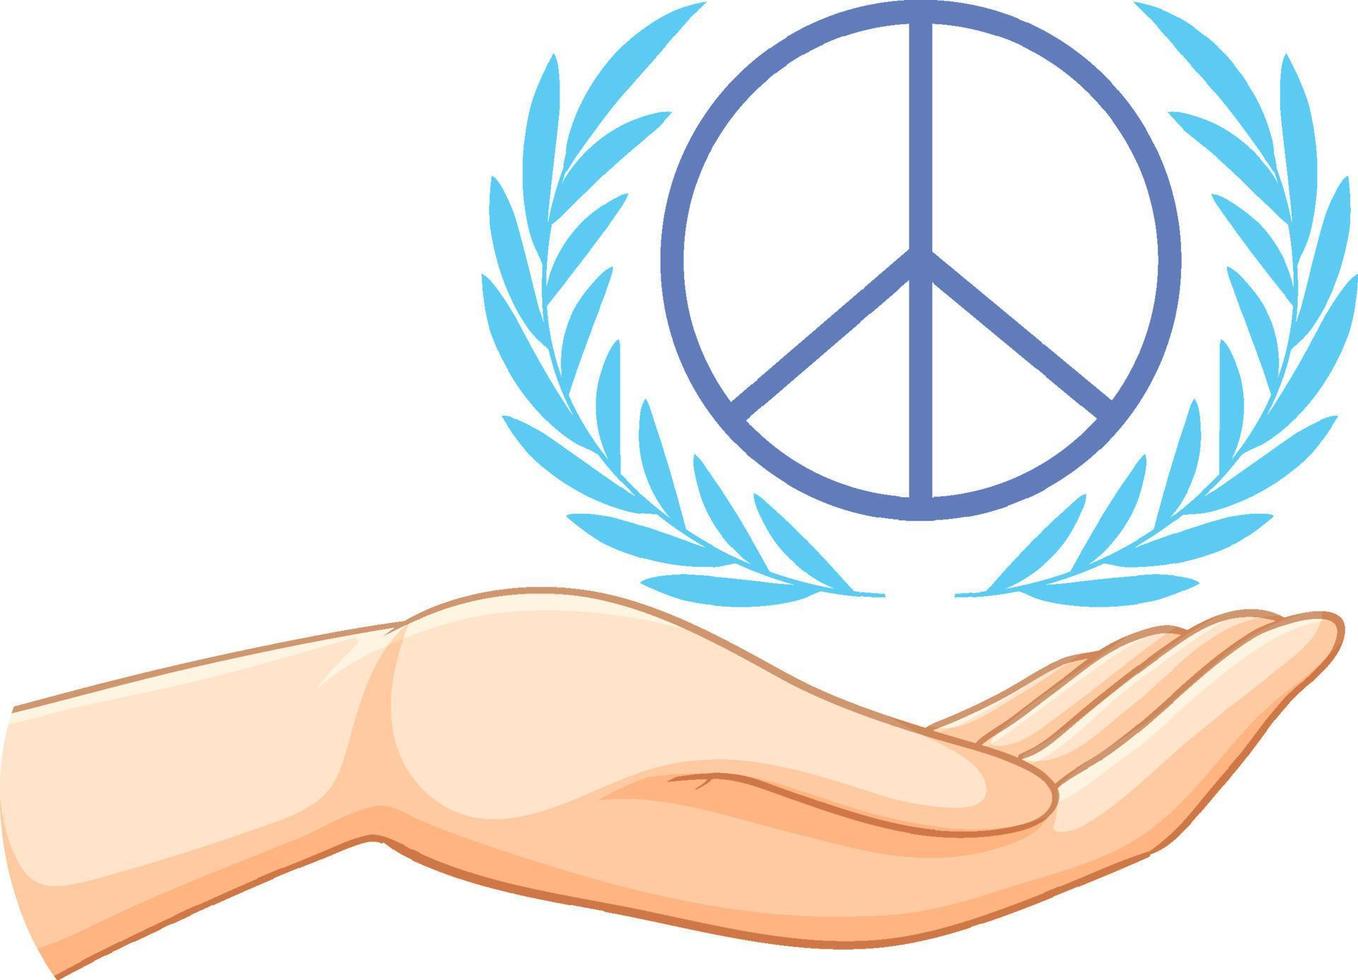 símbolo da paz com mão humana vetor